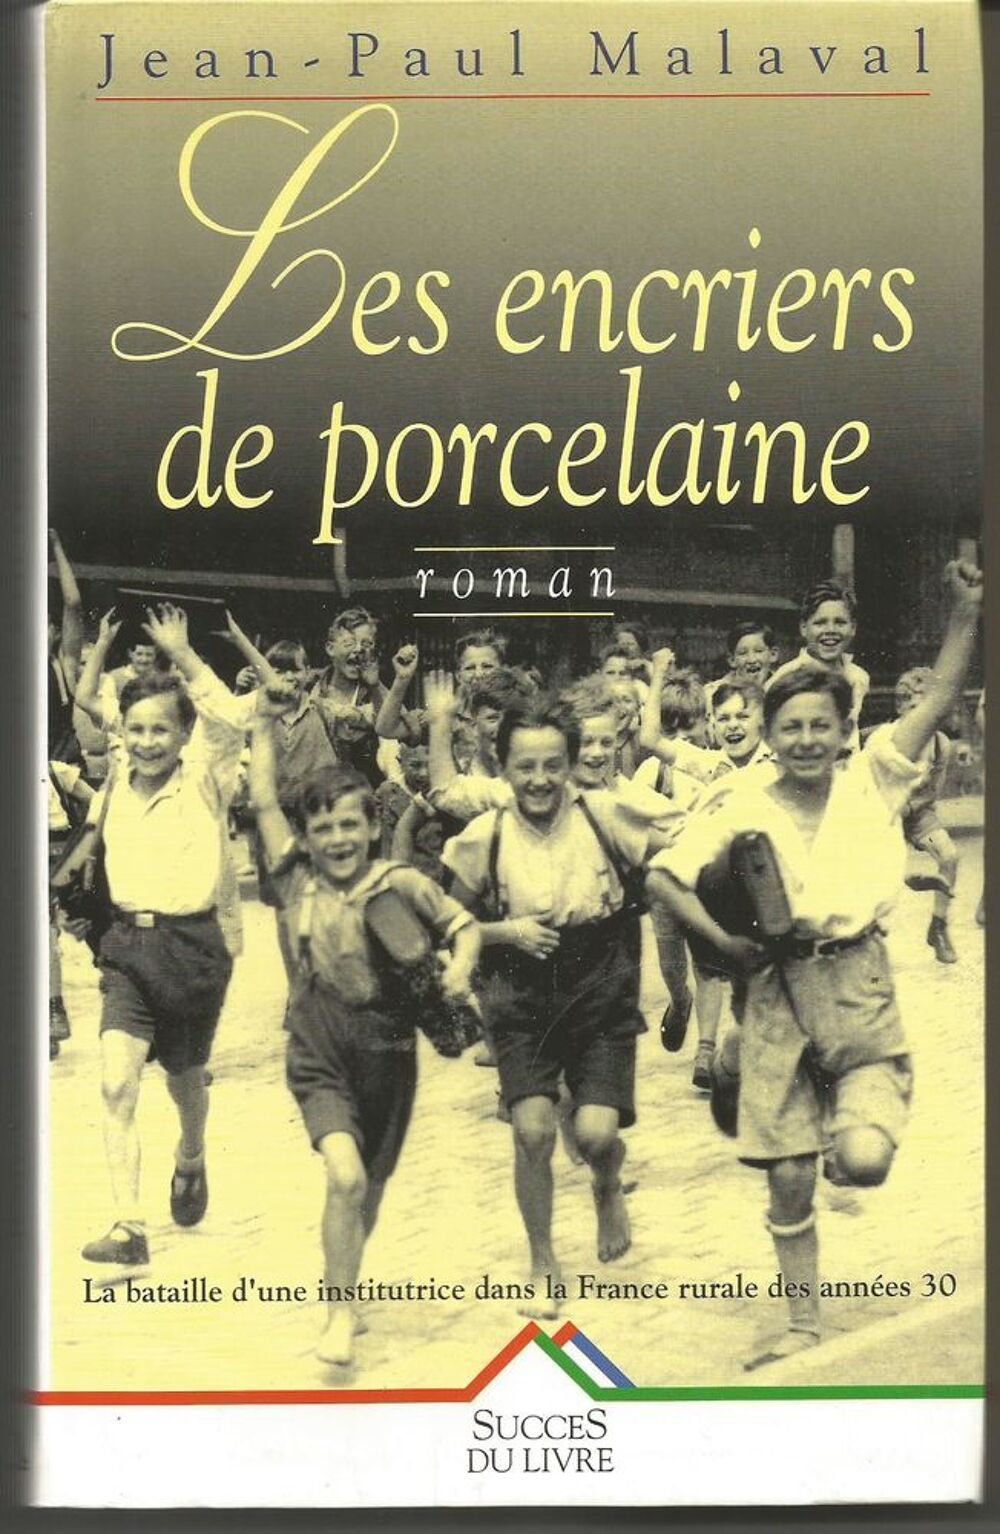 Jean Paul MALAVAL Les encriers de porcelaine, Livres et BD